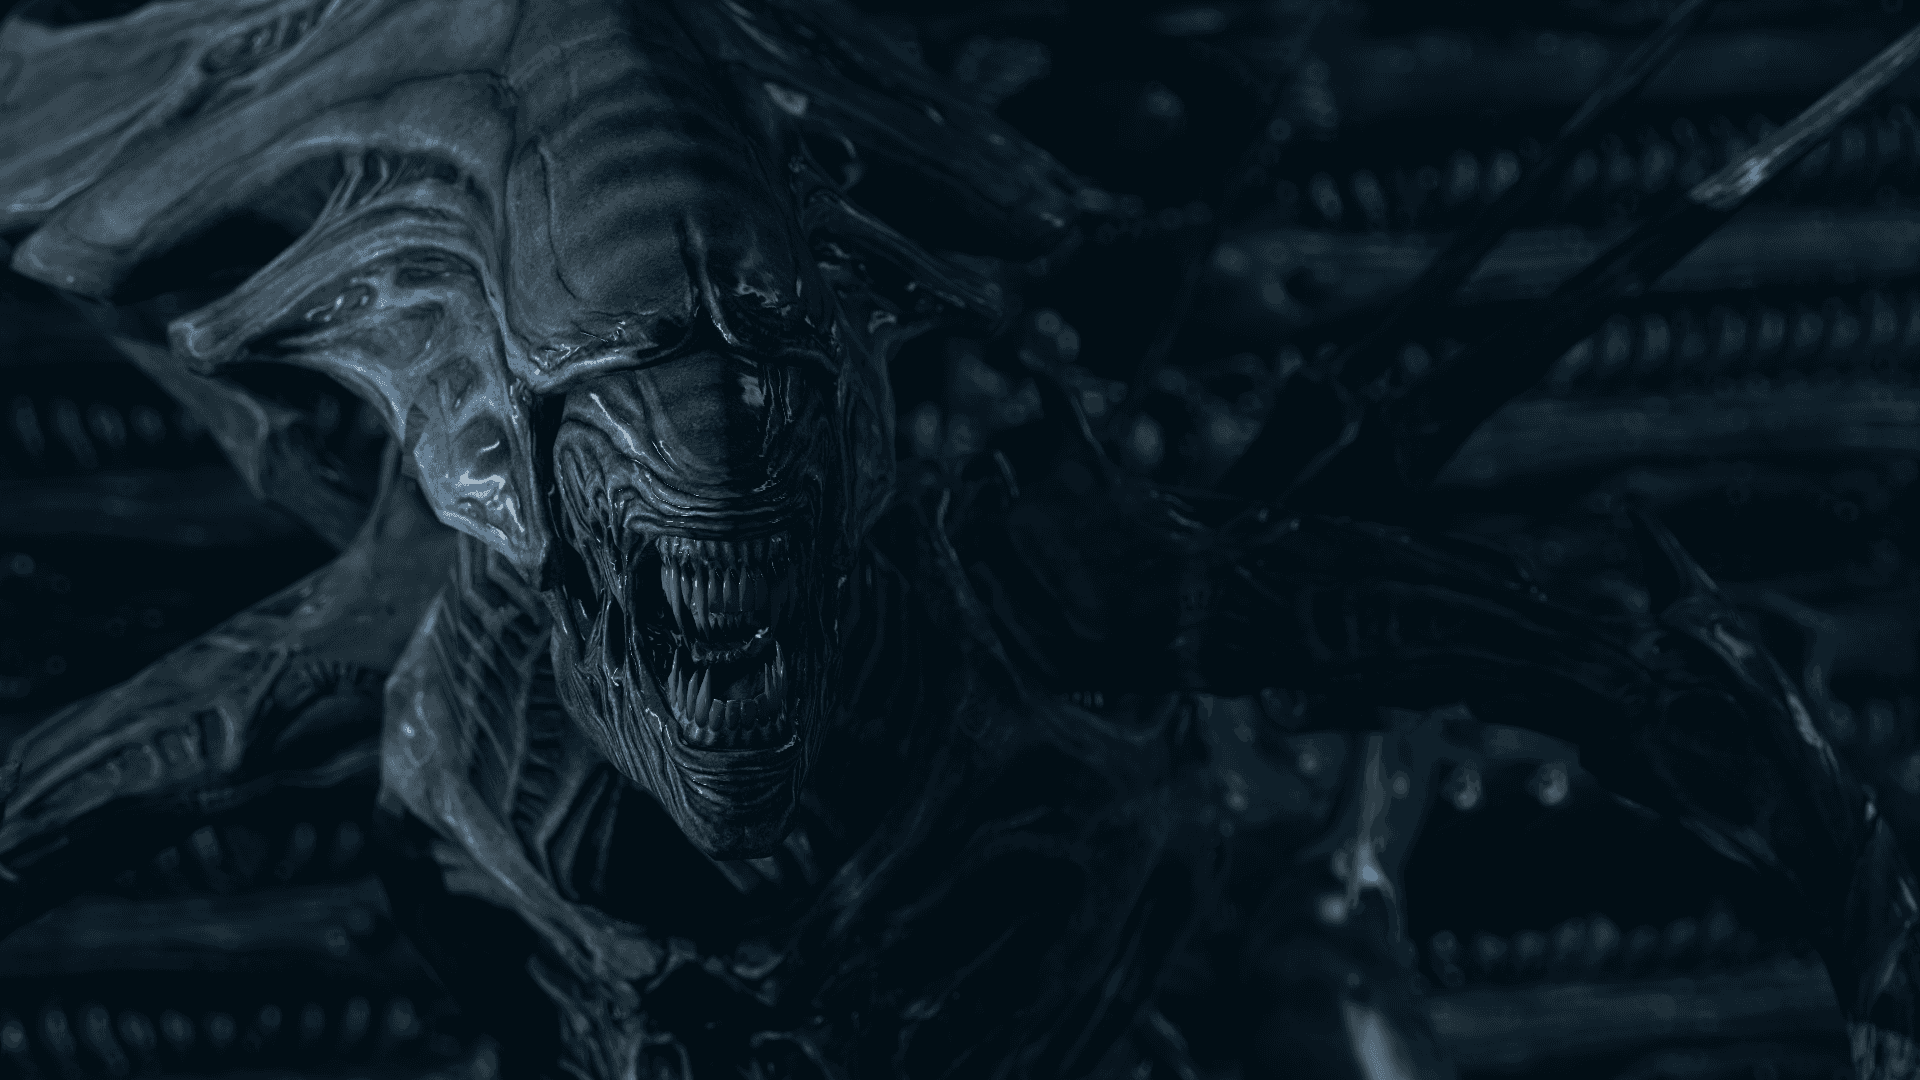 Aliensutomjordingar - Bakgrundsbild